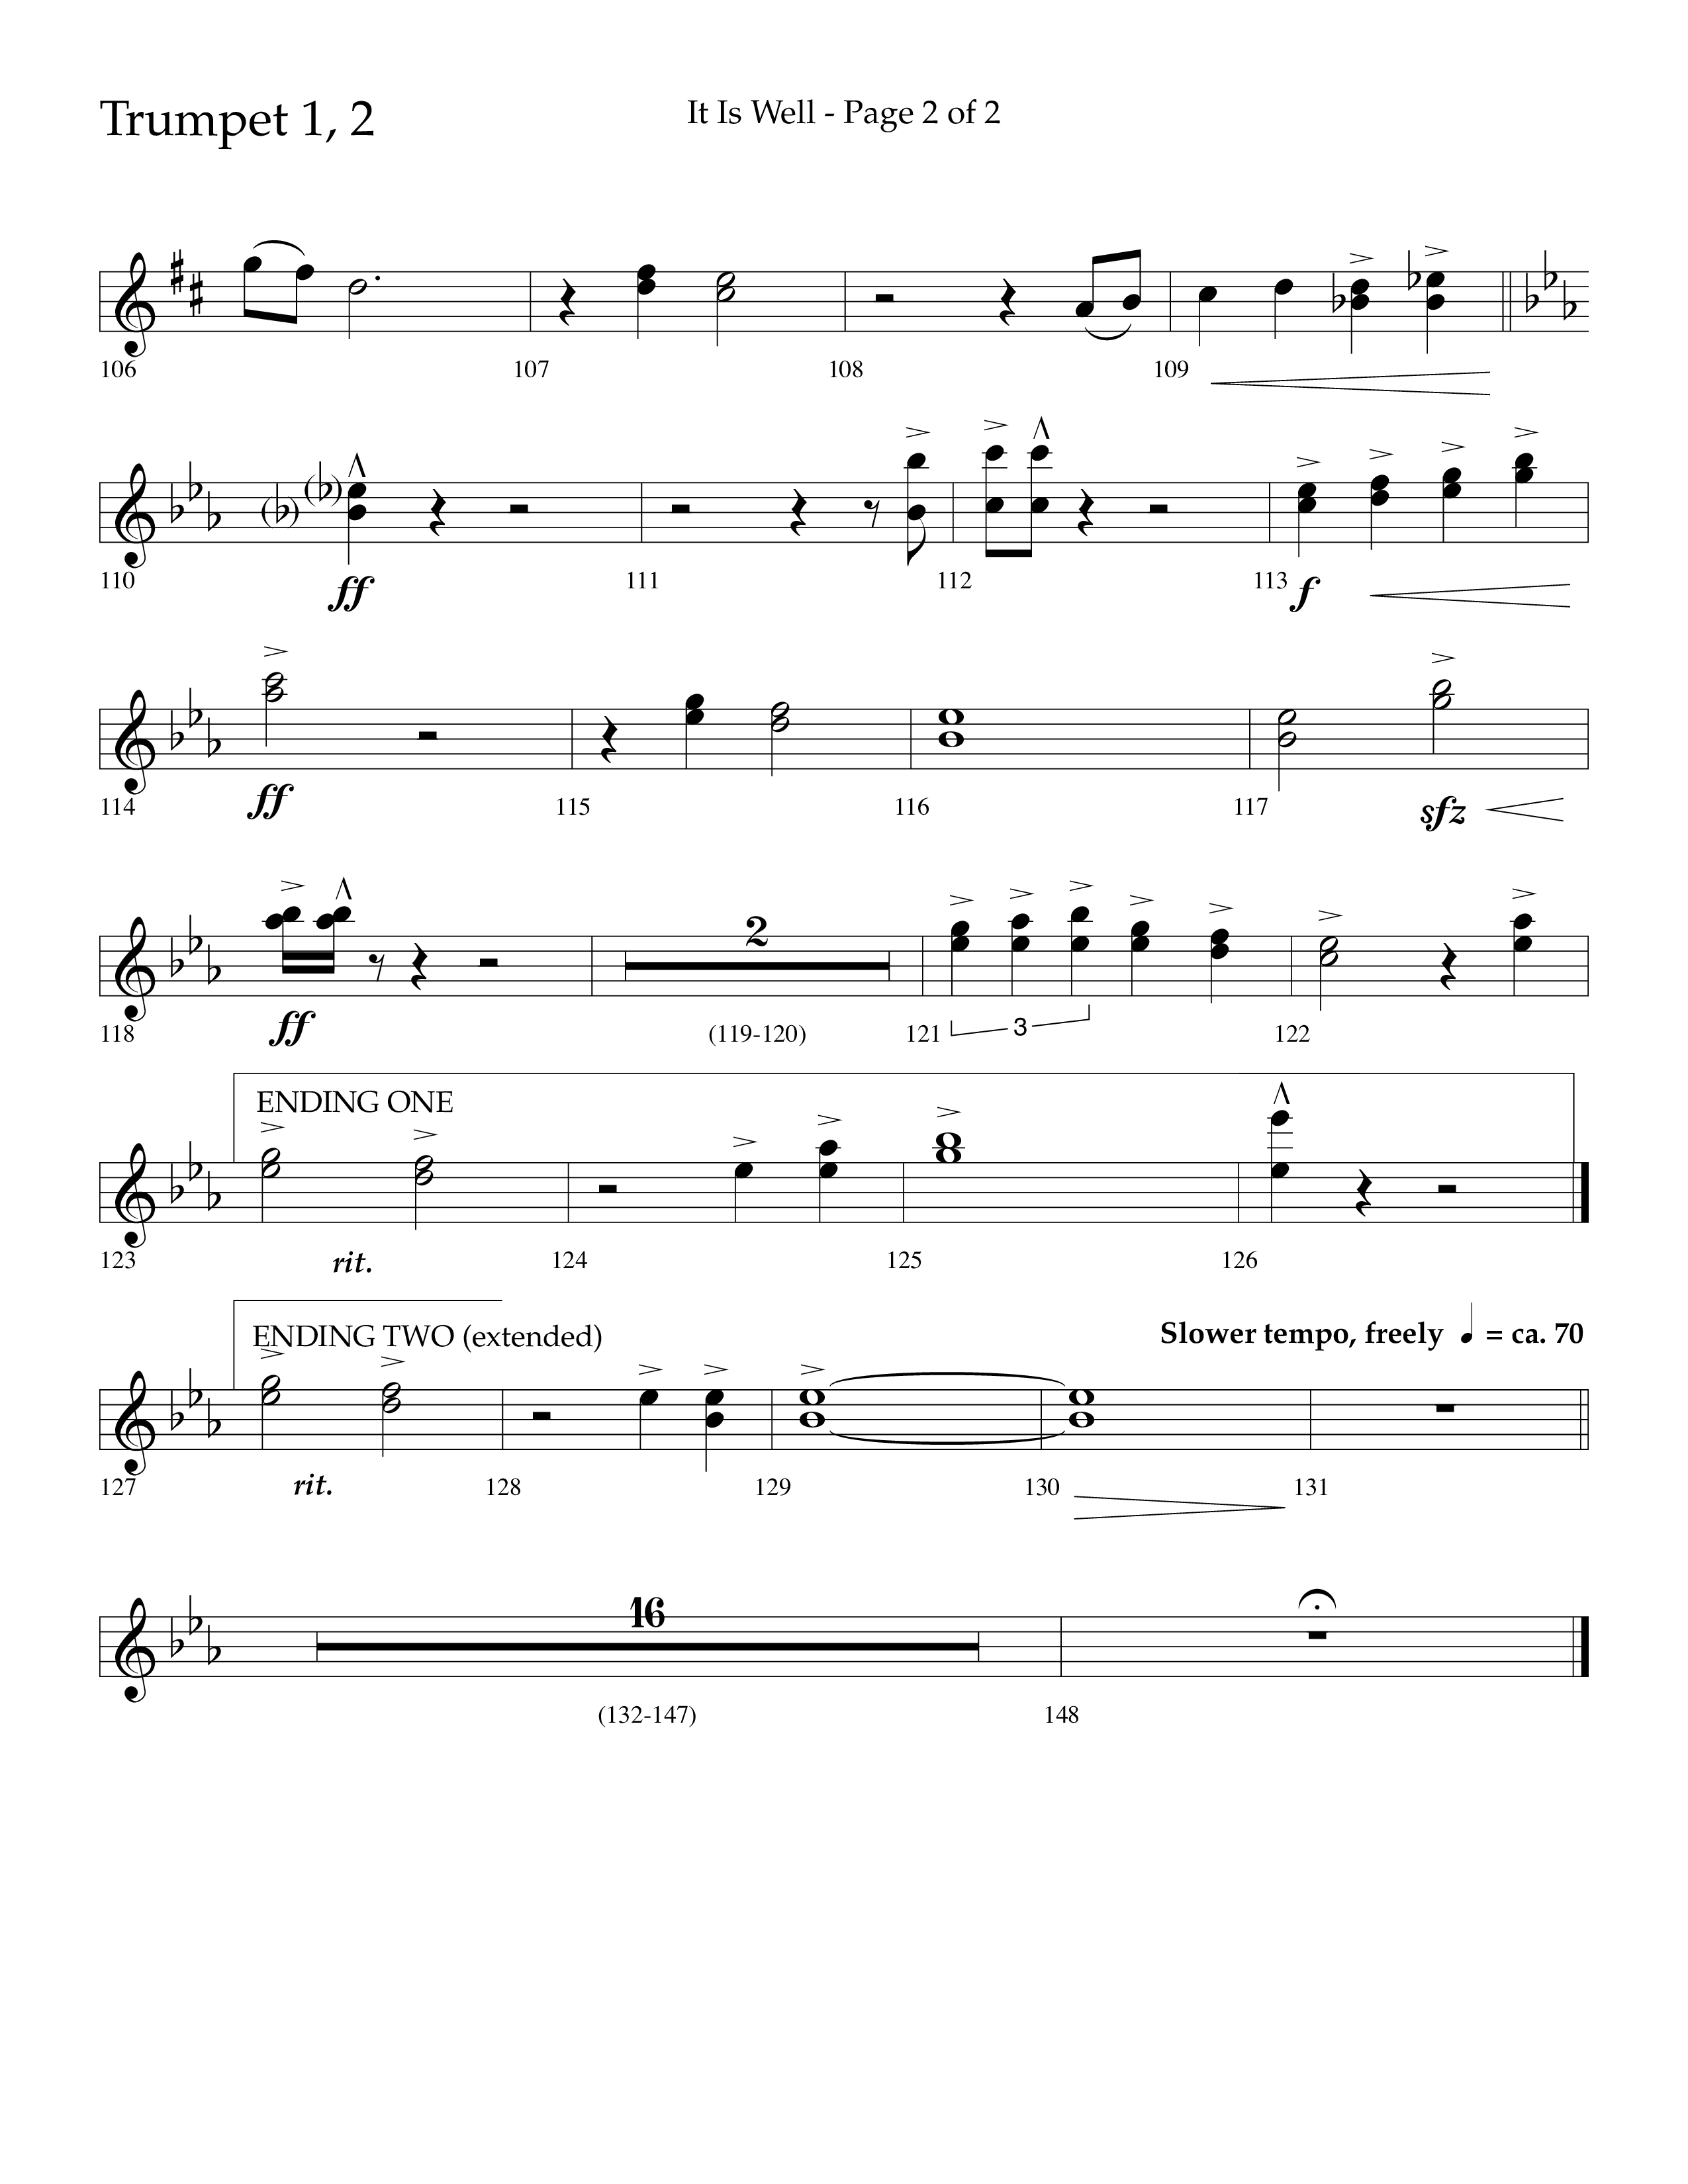 It Is Well (Choral Anthem SATB) Trumpet 1,2 (Lifeway Choral / Arr. Cliff Duren)